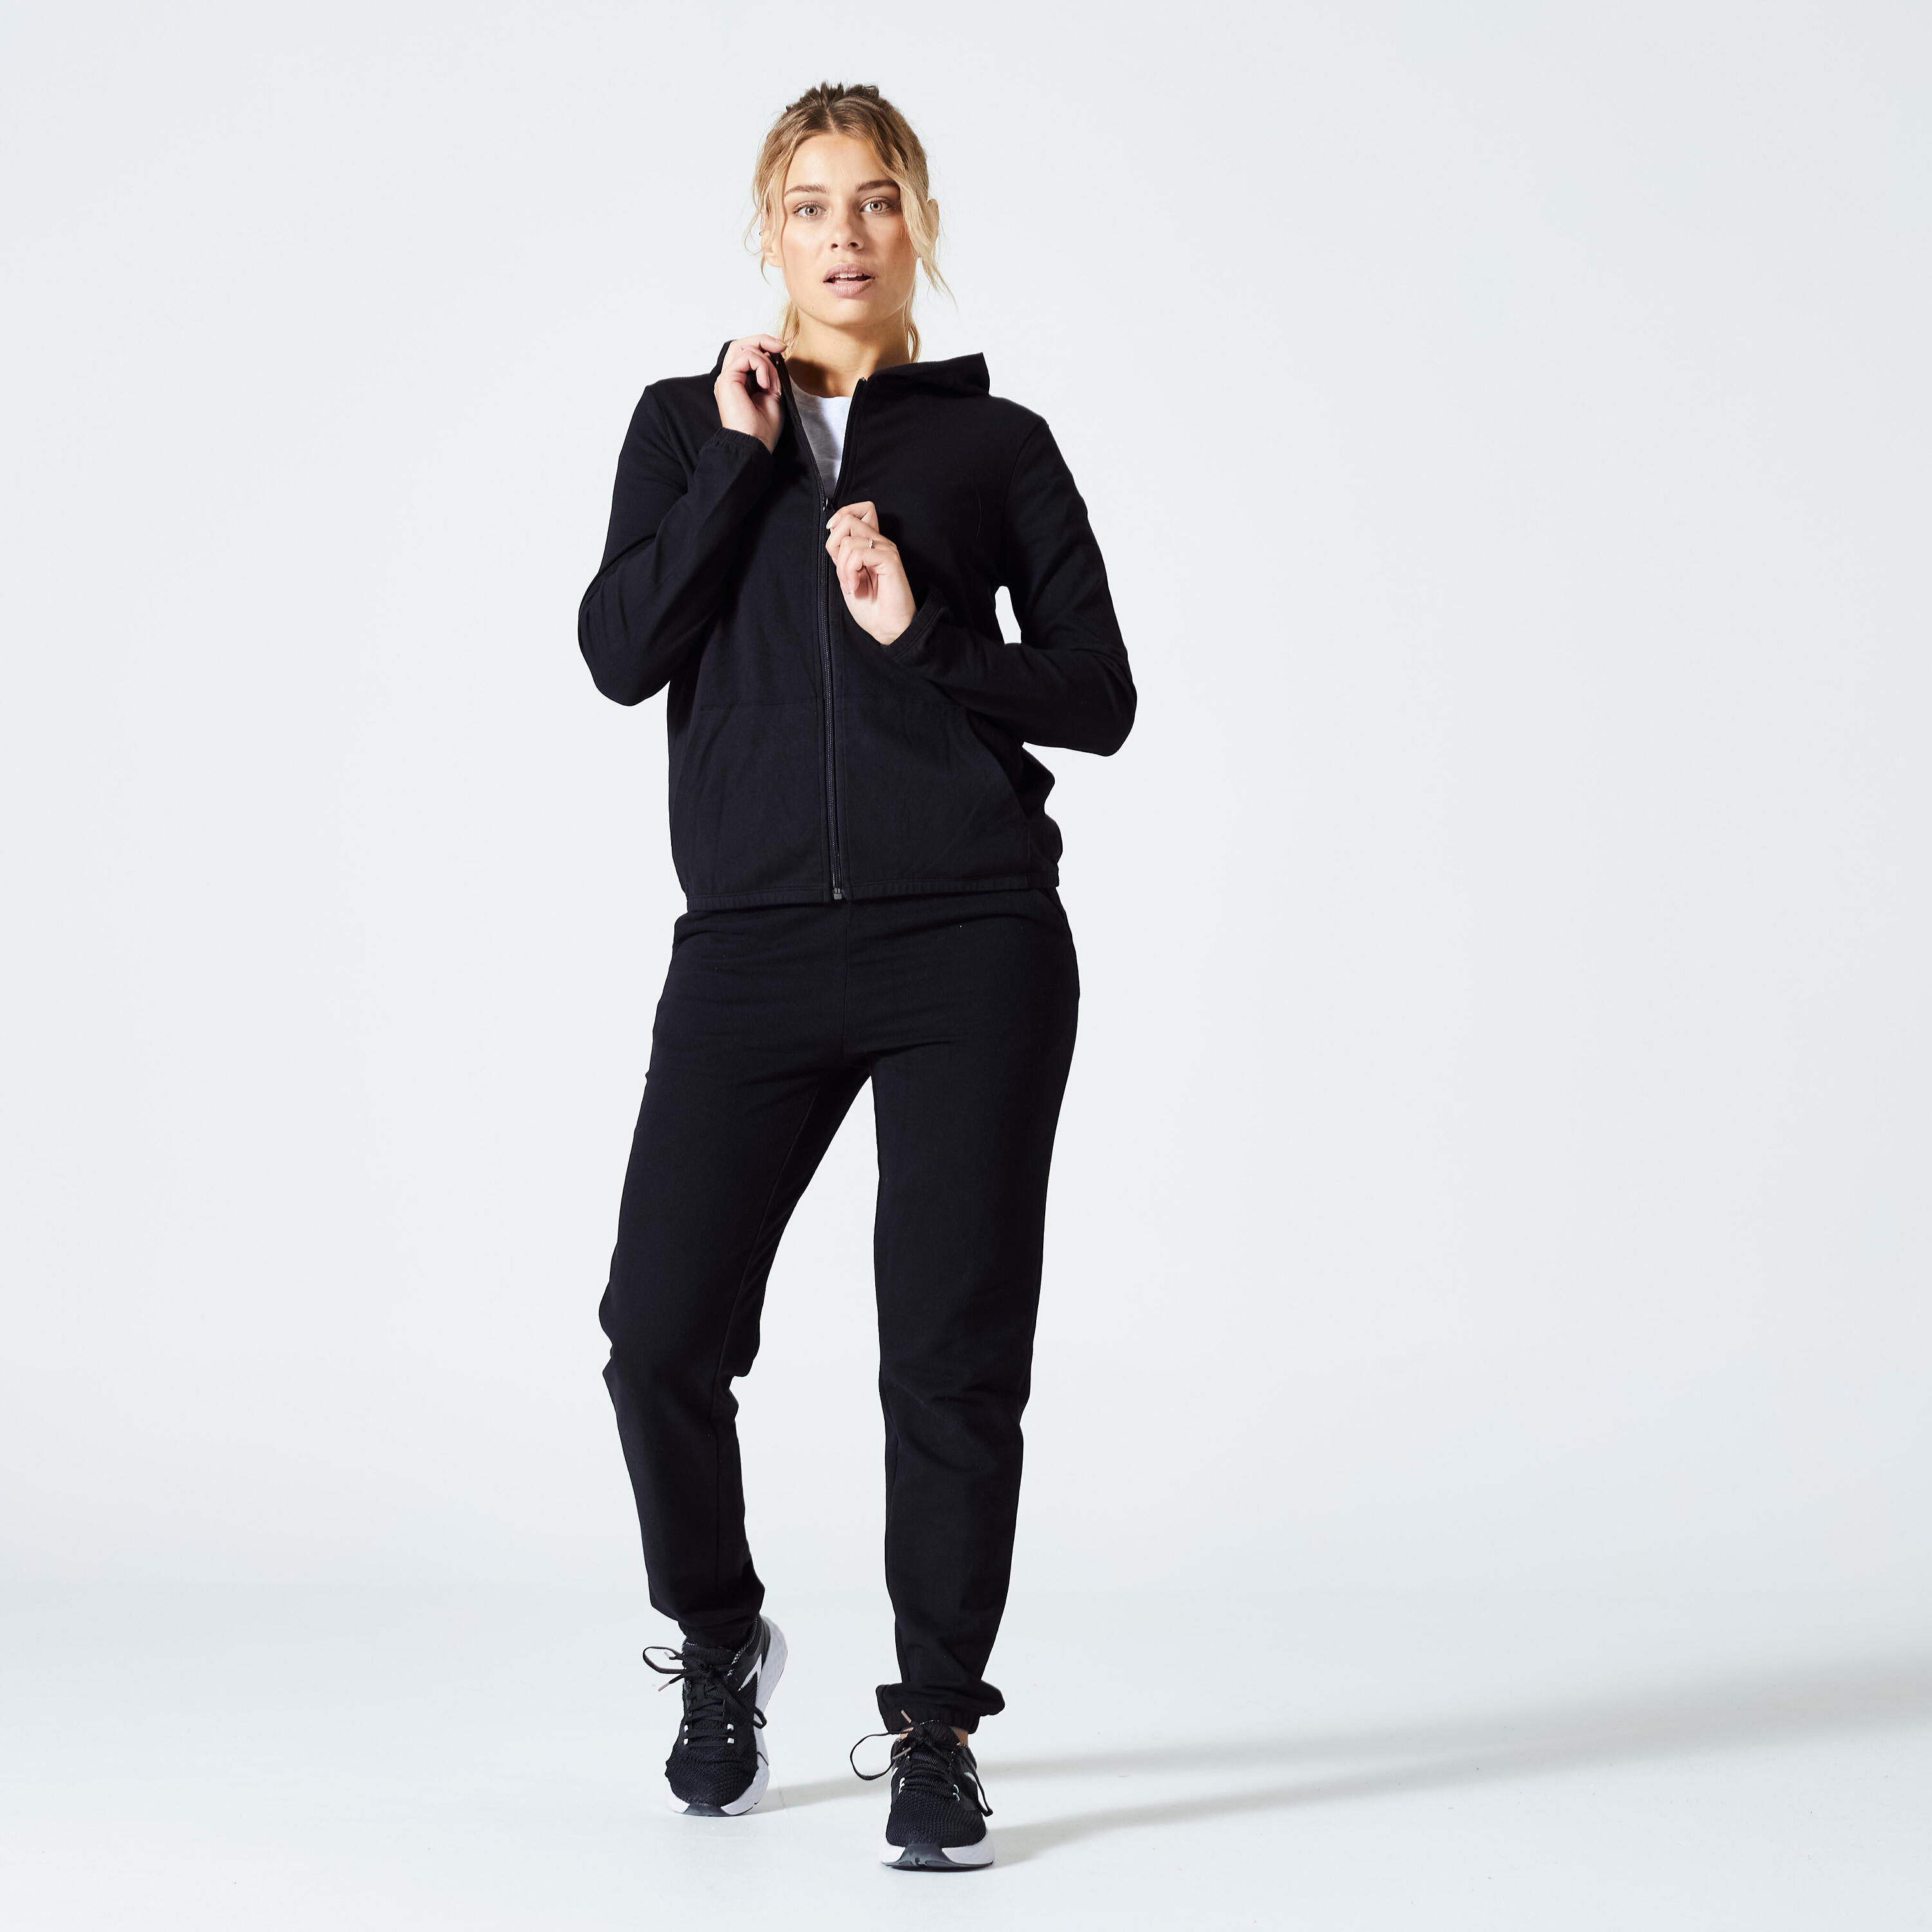 Women's Fitness Zip-Up Sweatshirt 100 - Black 2/5